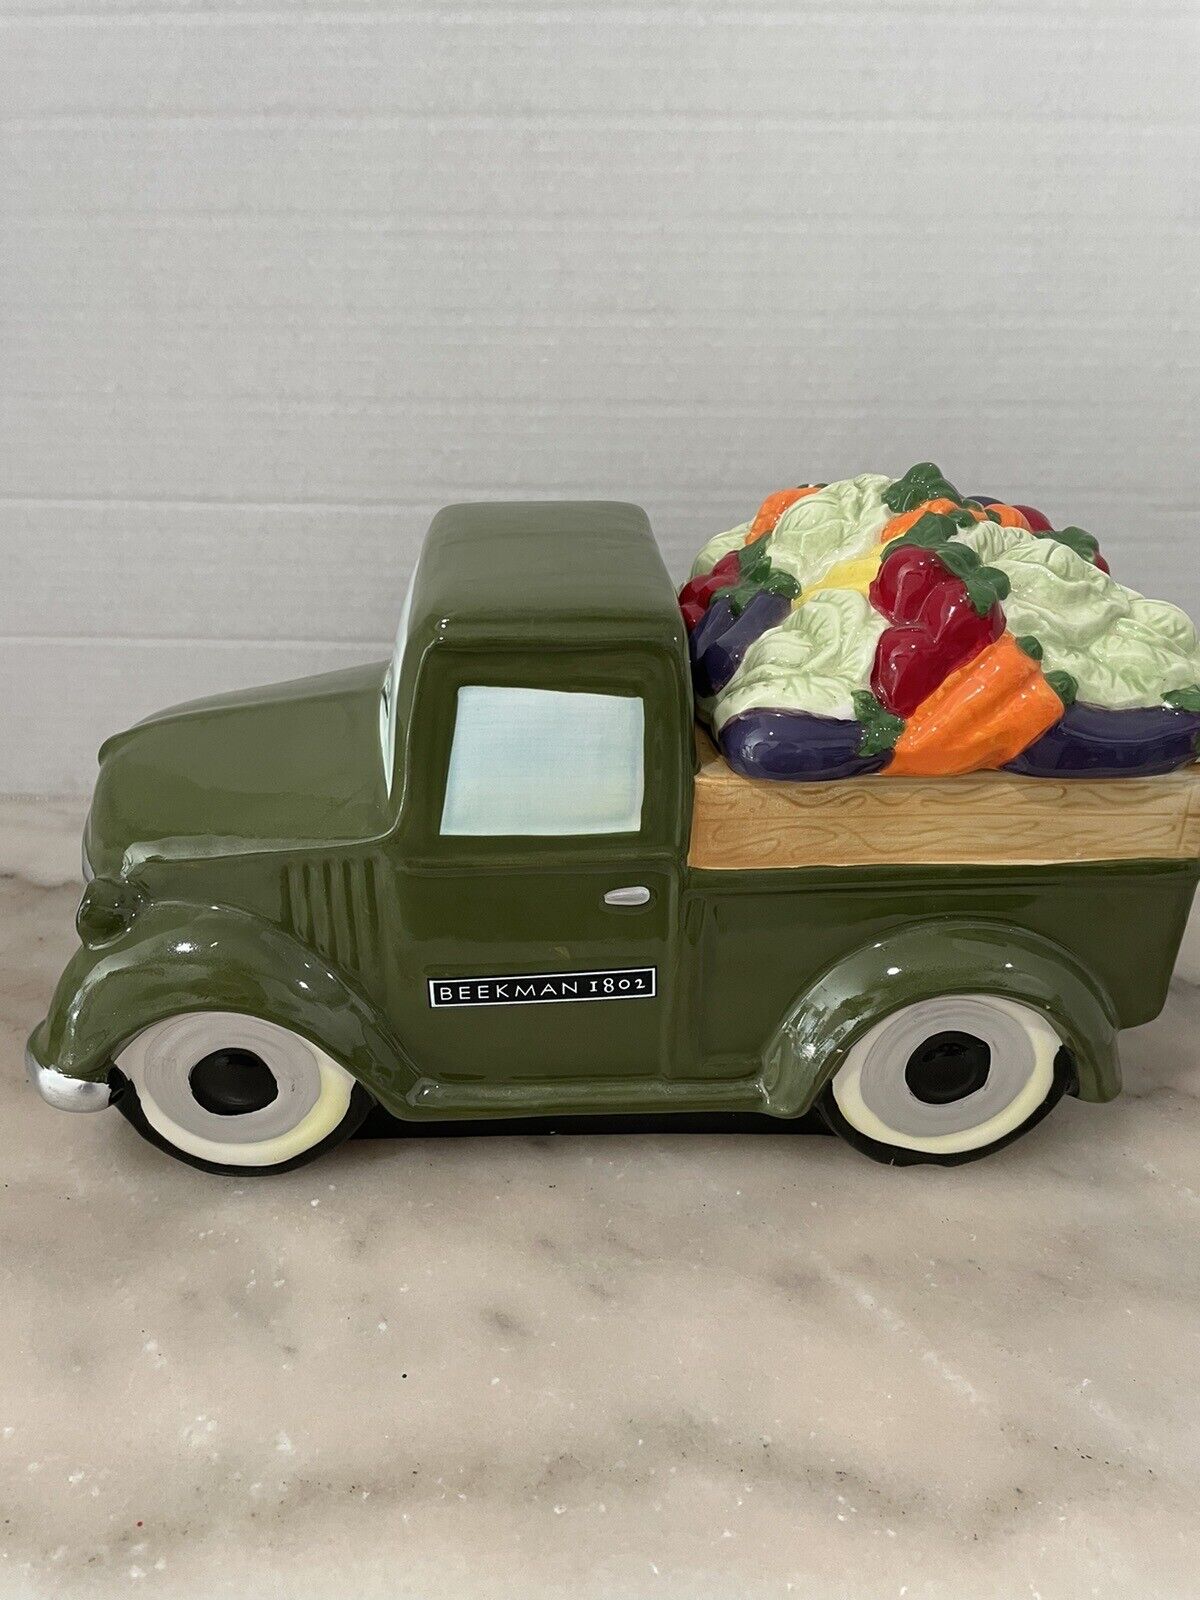 Farmers Market Green Truck Ceramic Cookie Jar- 12”x7” Beekman 1802 Classic Truck